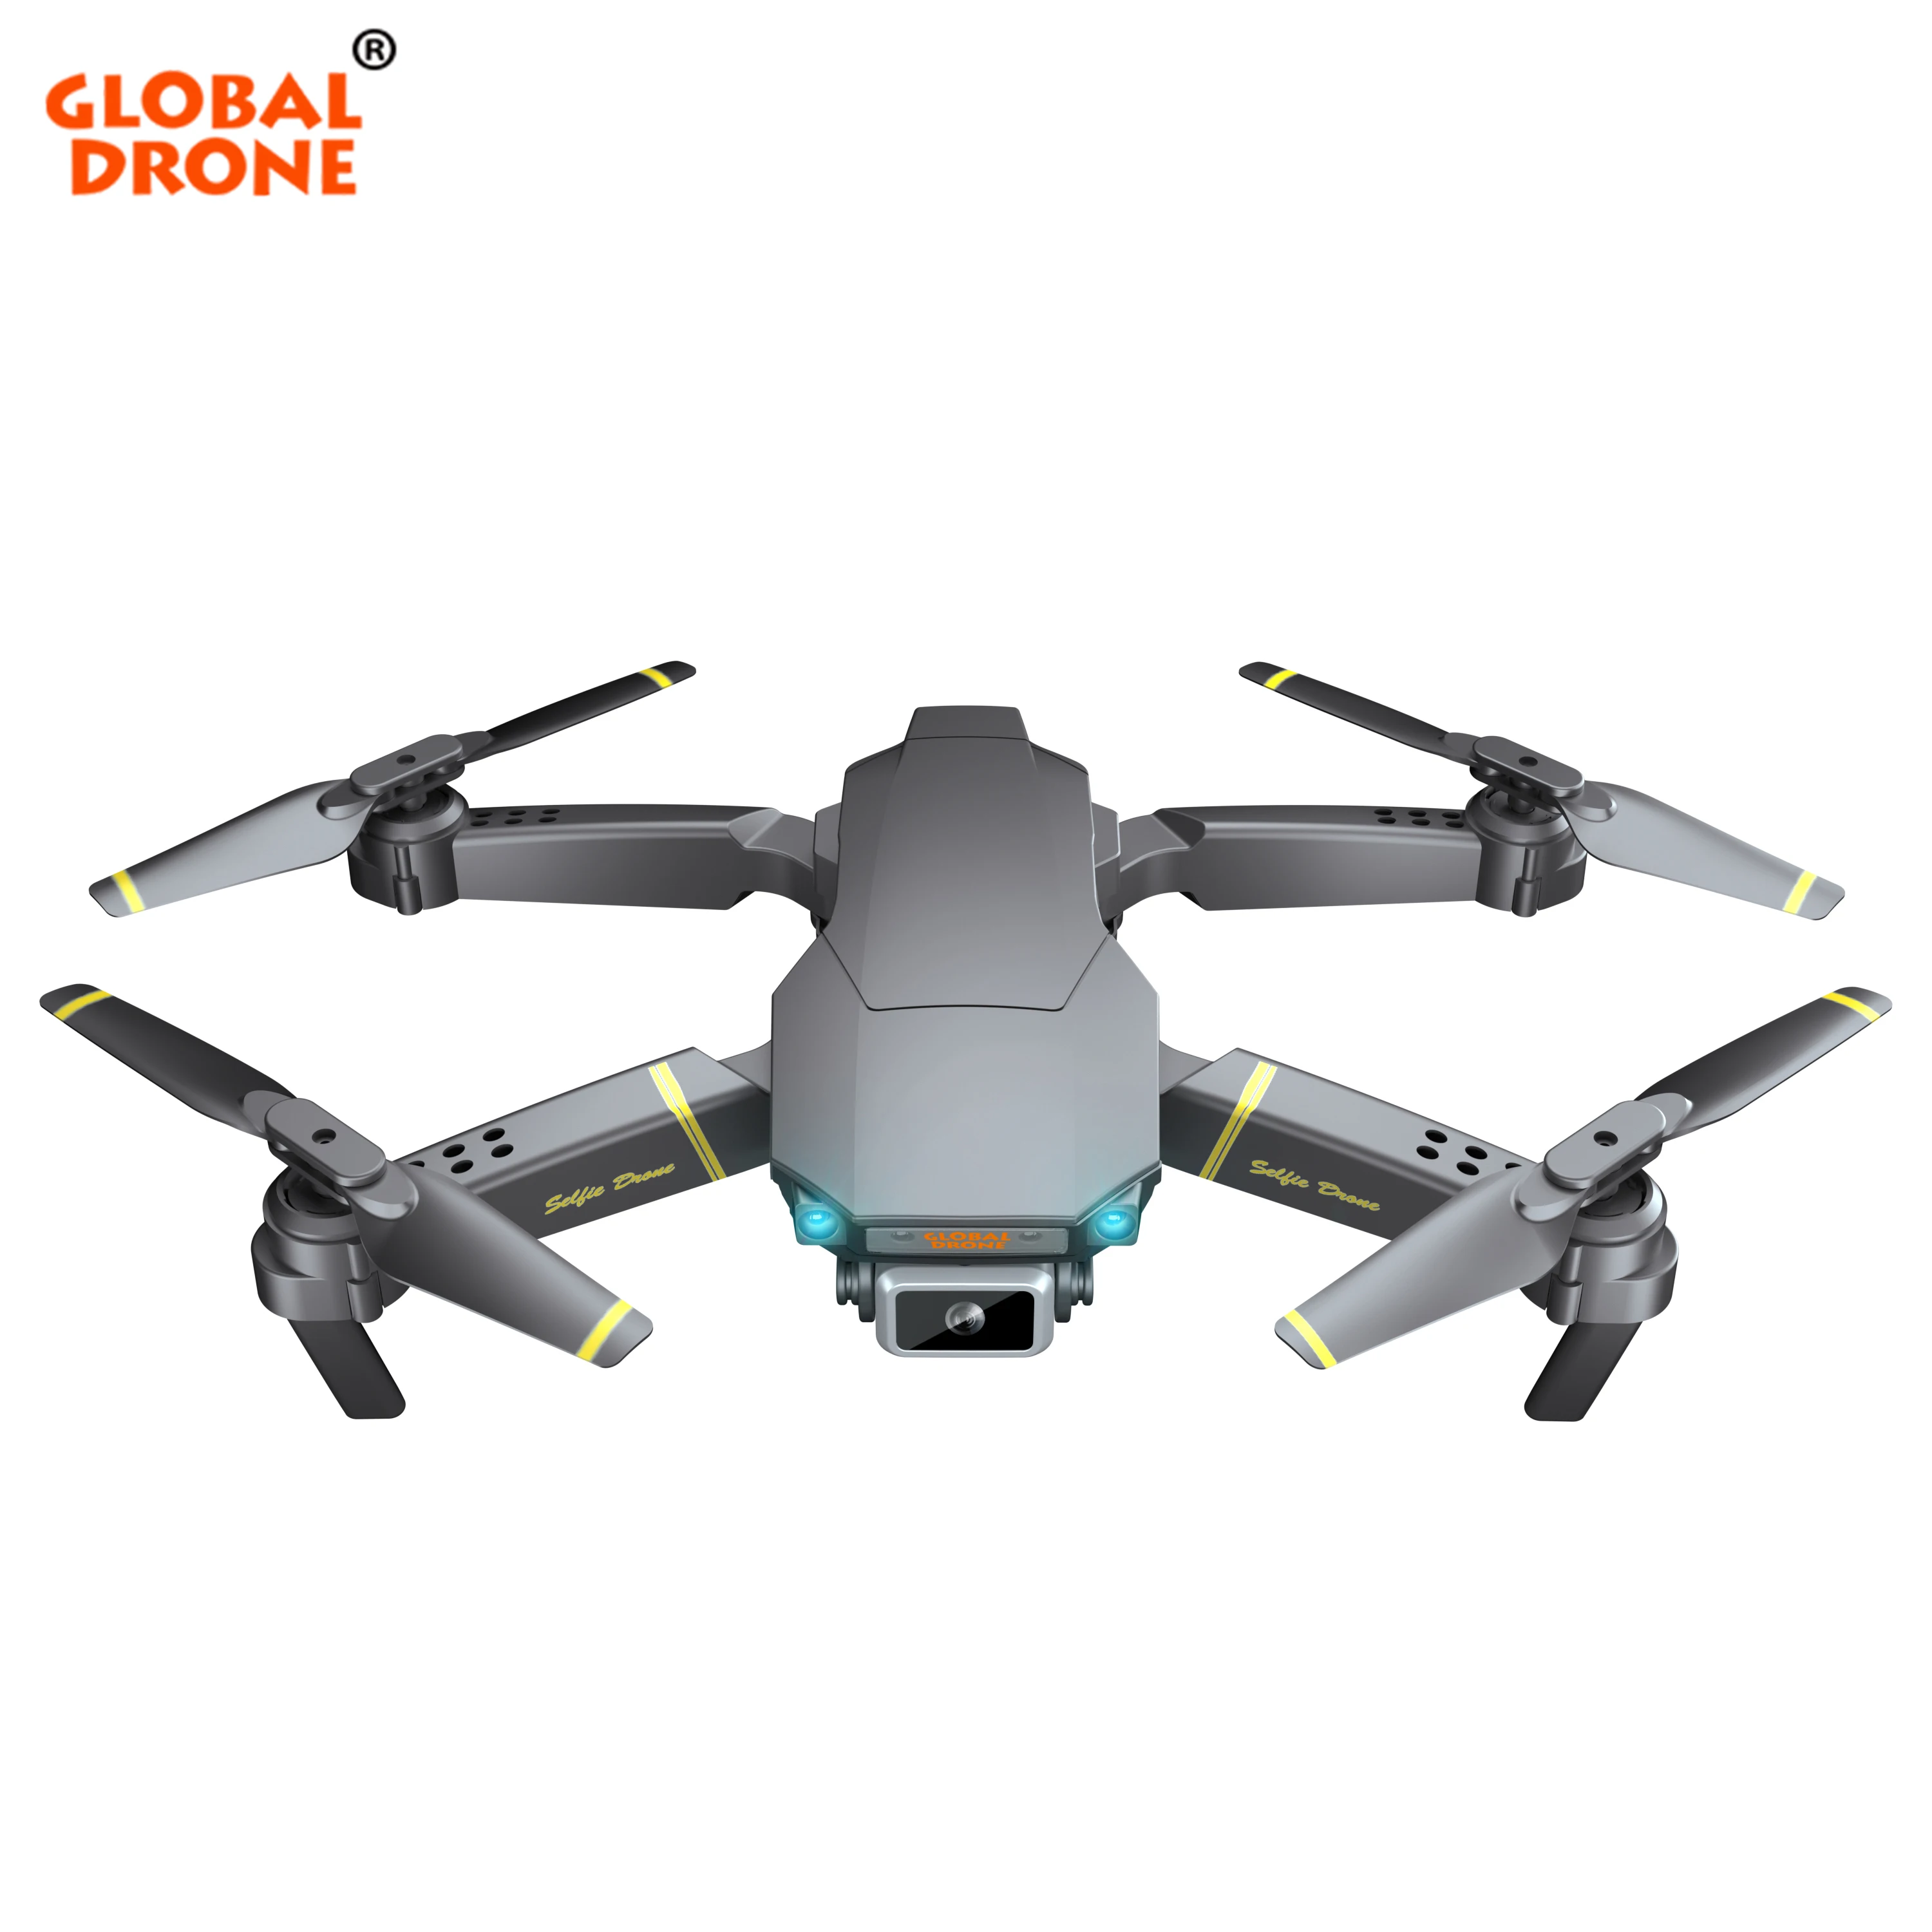 

Global Drone GD89 Pro Drone Professionnel with 720P HD Adjustable Camera Dron Camera 2.4G Wifi FPV vs Xiaomi Drone Fimi X8 2020